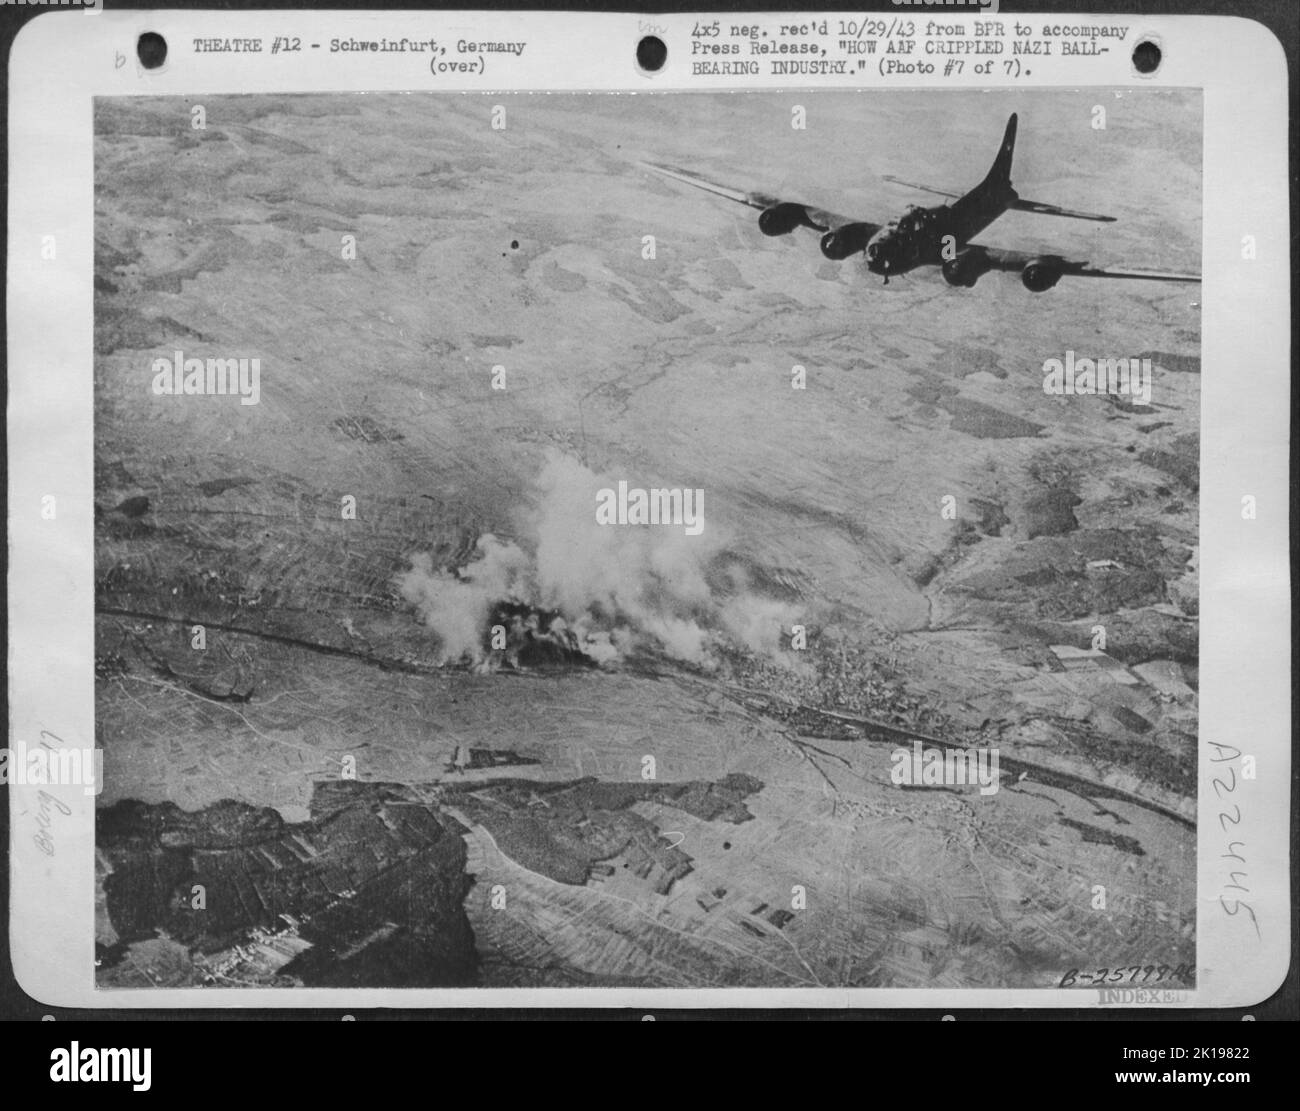 Dirigendosi verso casa, gli aerei americani potrebbero guardare indietro Schweinfurt in fiamme. La copertura da combattimento per le fortezze volanti è stata fornita dalla Repubblica P-47 'Thunderbolts' che ha scortato i bombardieri parte della strada verso i loro obiettivi. Gli americani hanno perso 60 Flying Foto Stock